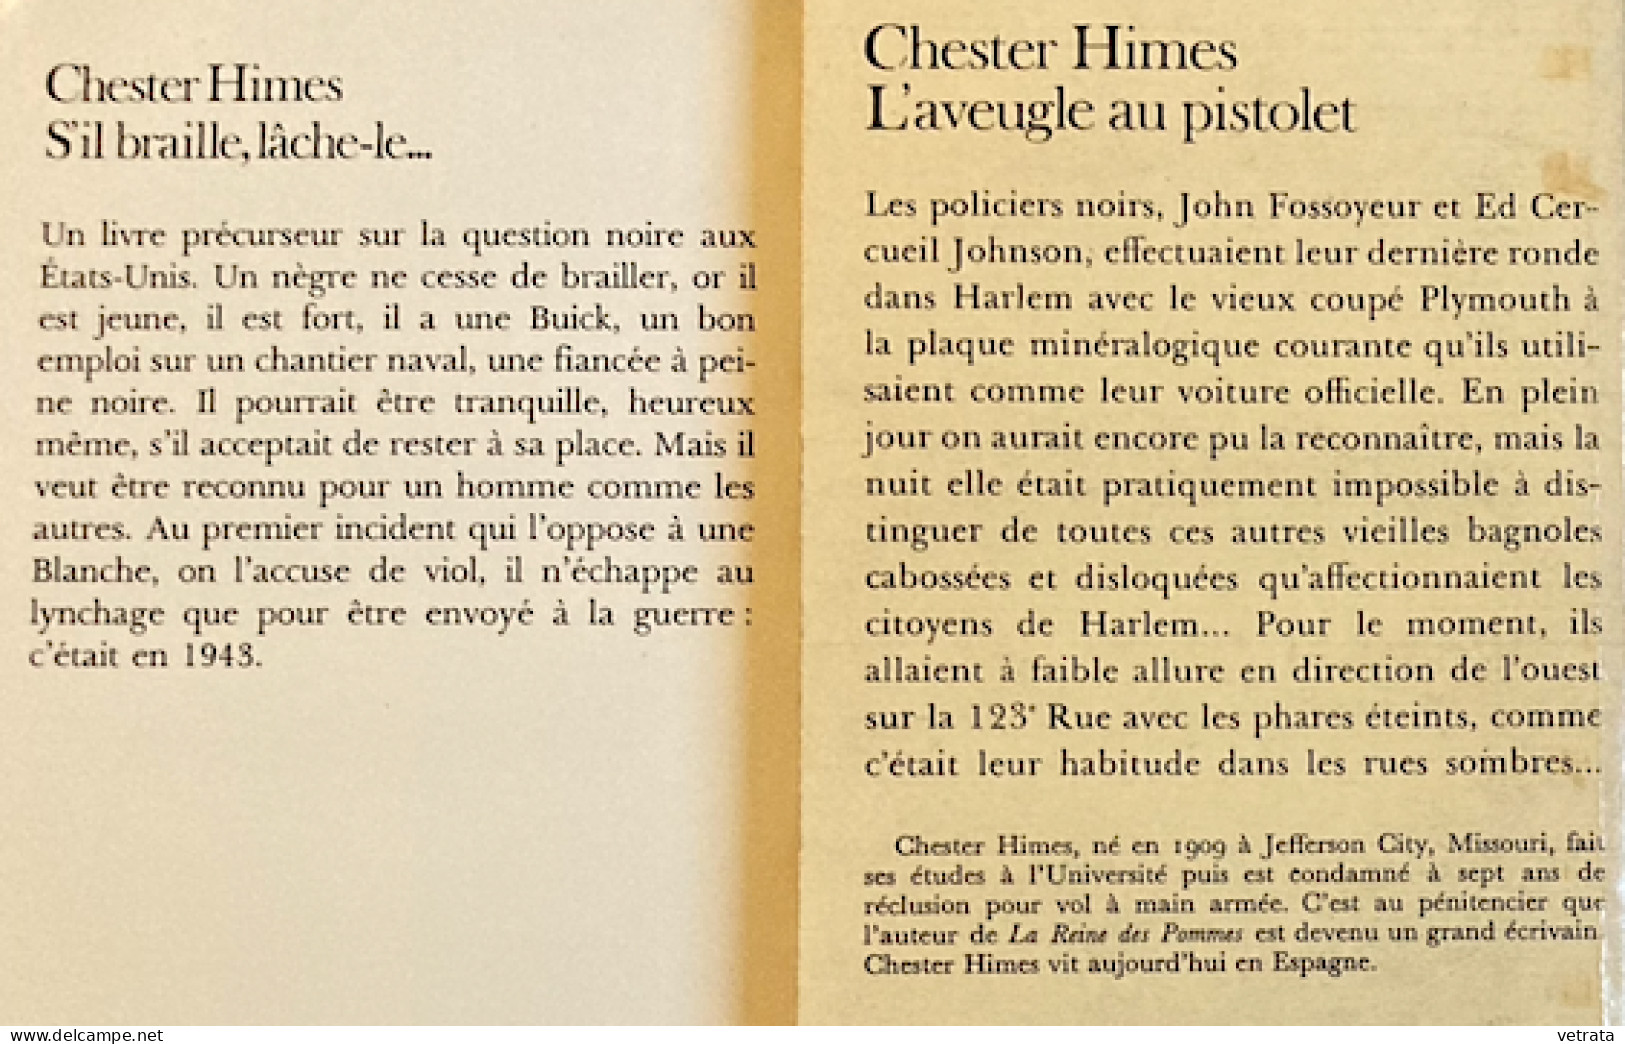 8 Livres de Chester Himes Collection de Poche (Série Noire-Carré Noir-Folio-10/18-Points Seuil)  = La reine des pommes-D